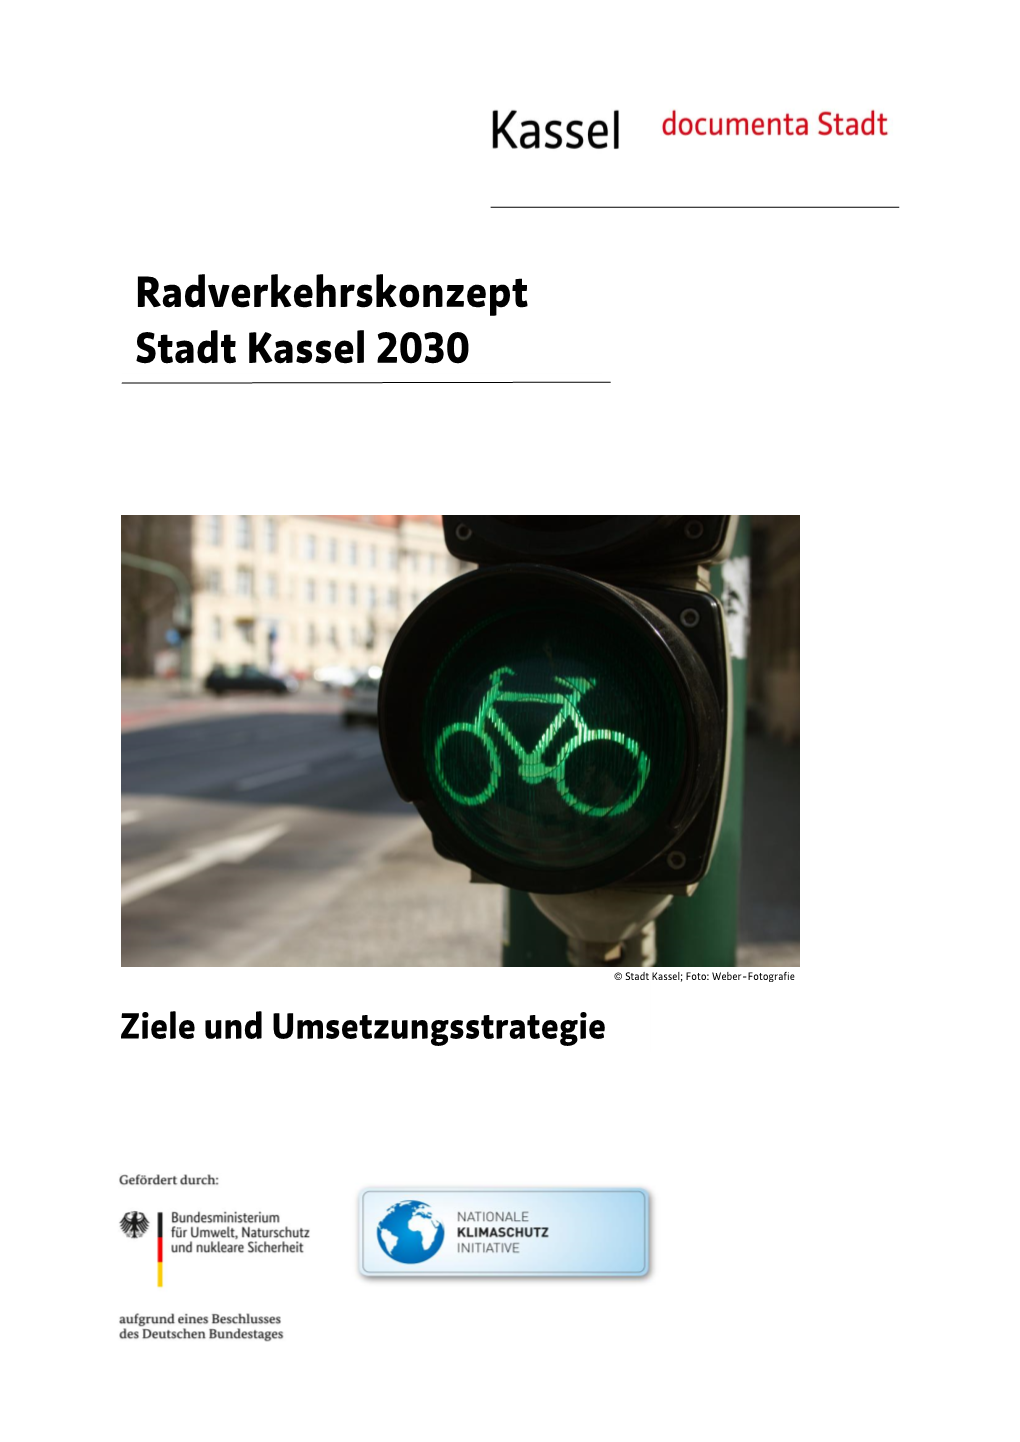 Radverkehrskonzept Stadt Kassel 2030 – Ziele Und Umsetzungsstrategie